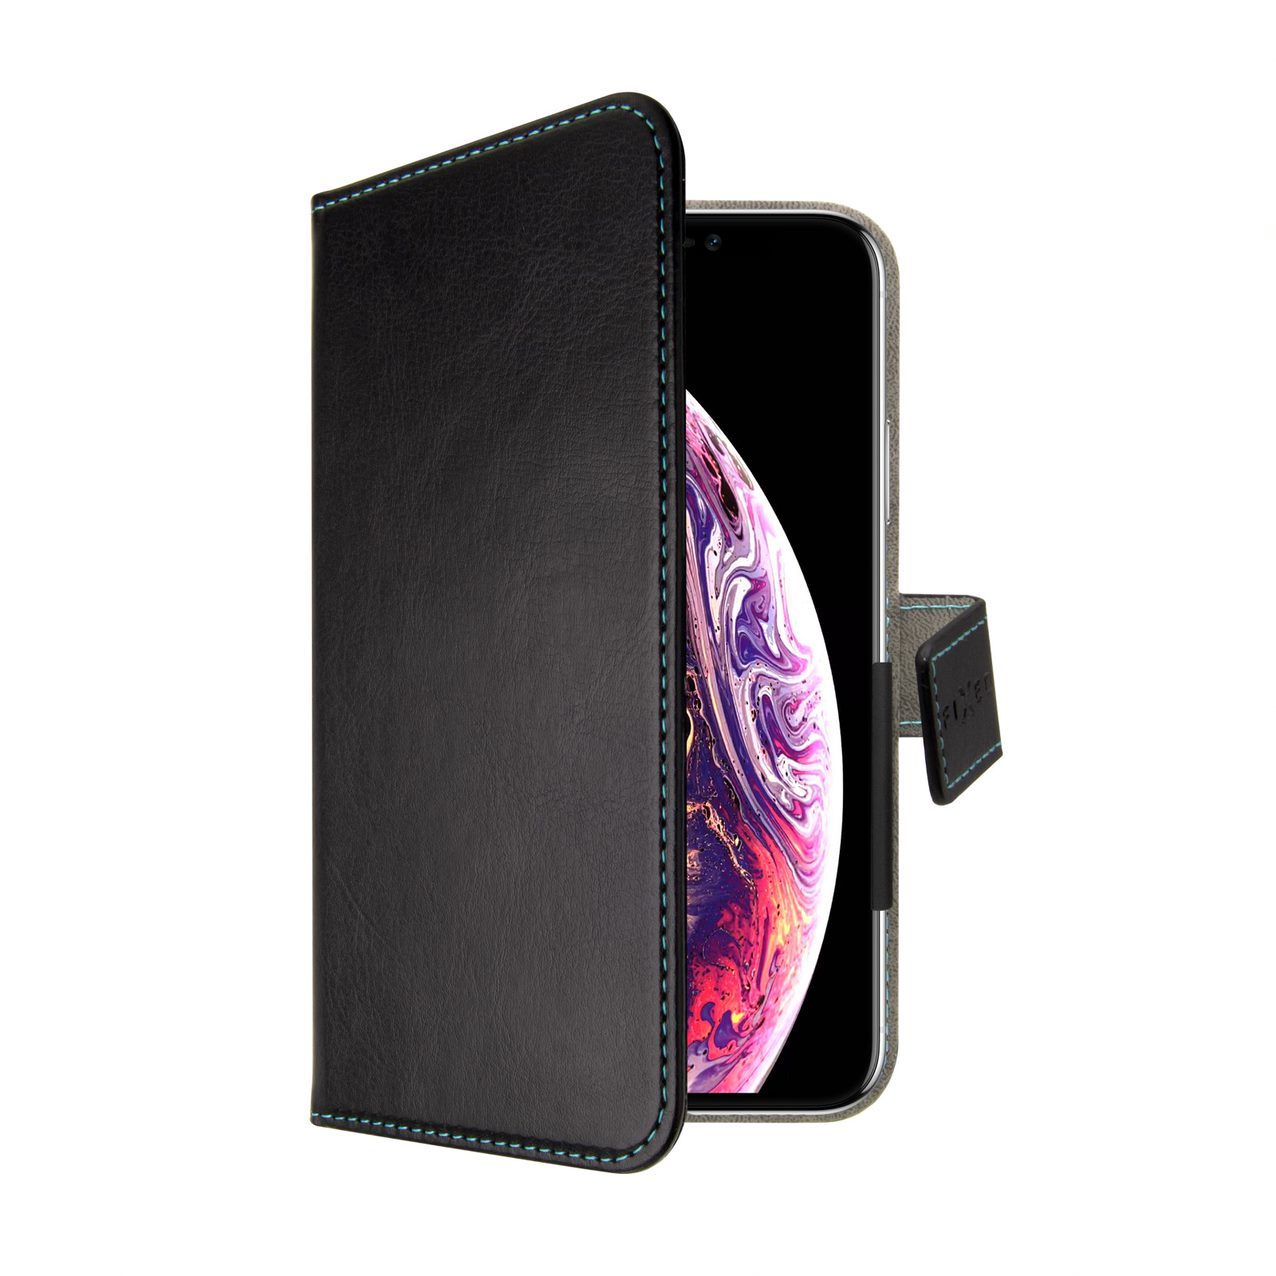 FIXED Novel univerzální pouzdro pro 5"-5.7" telefony, černé